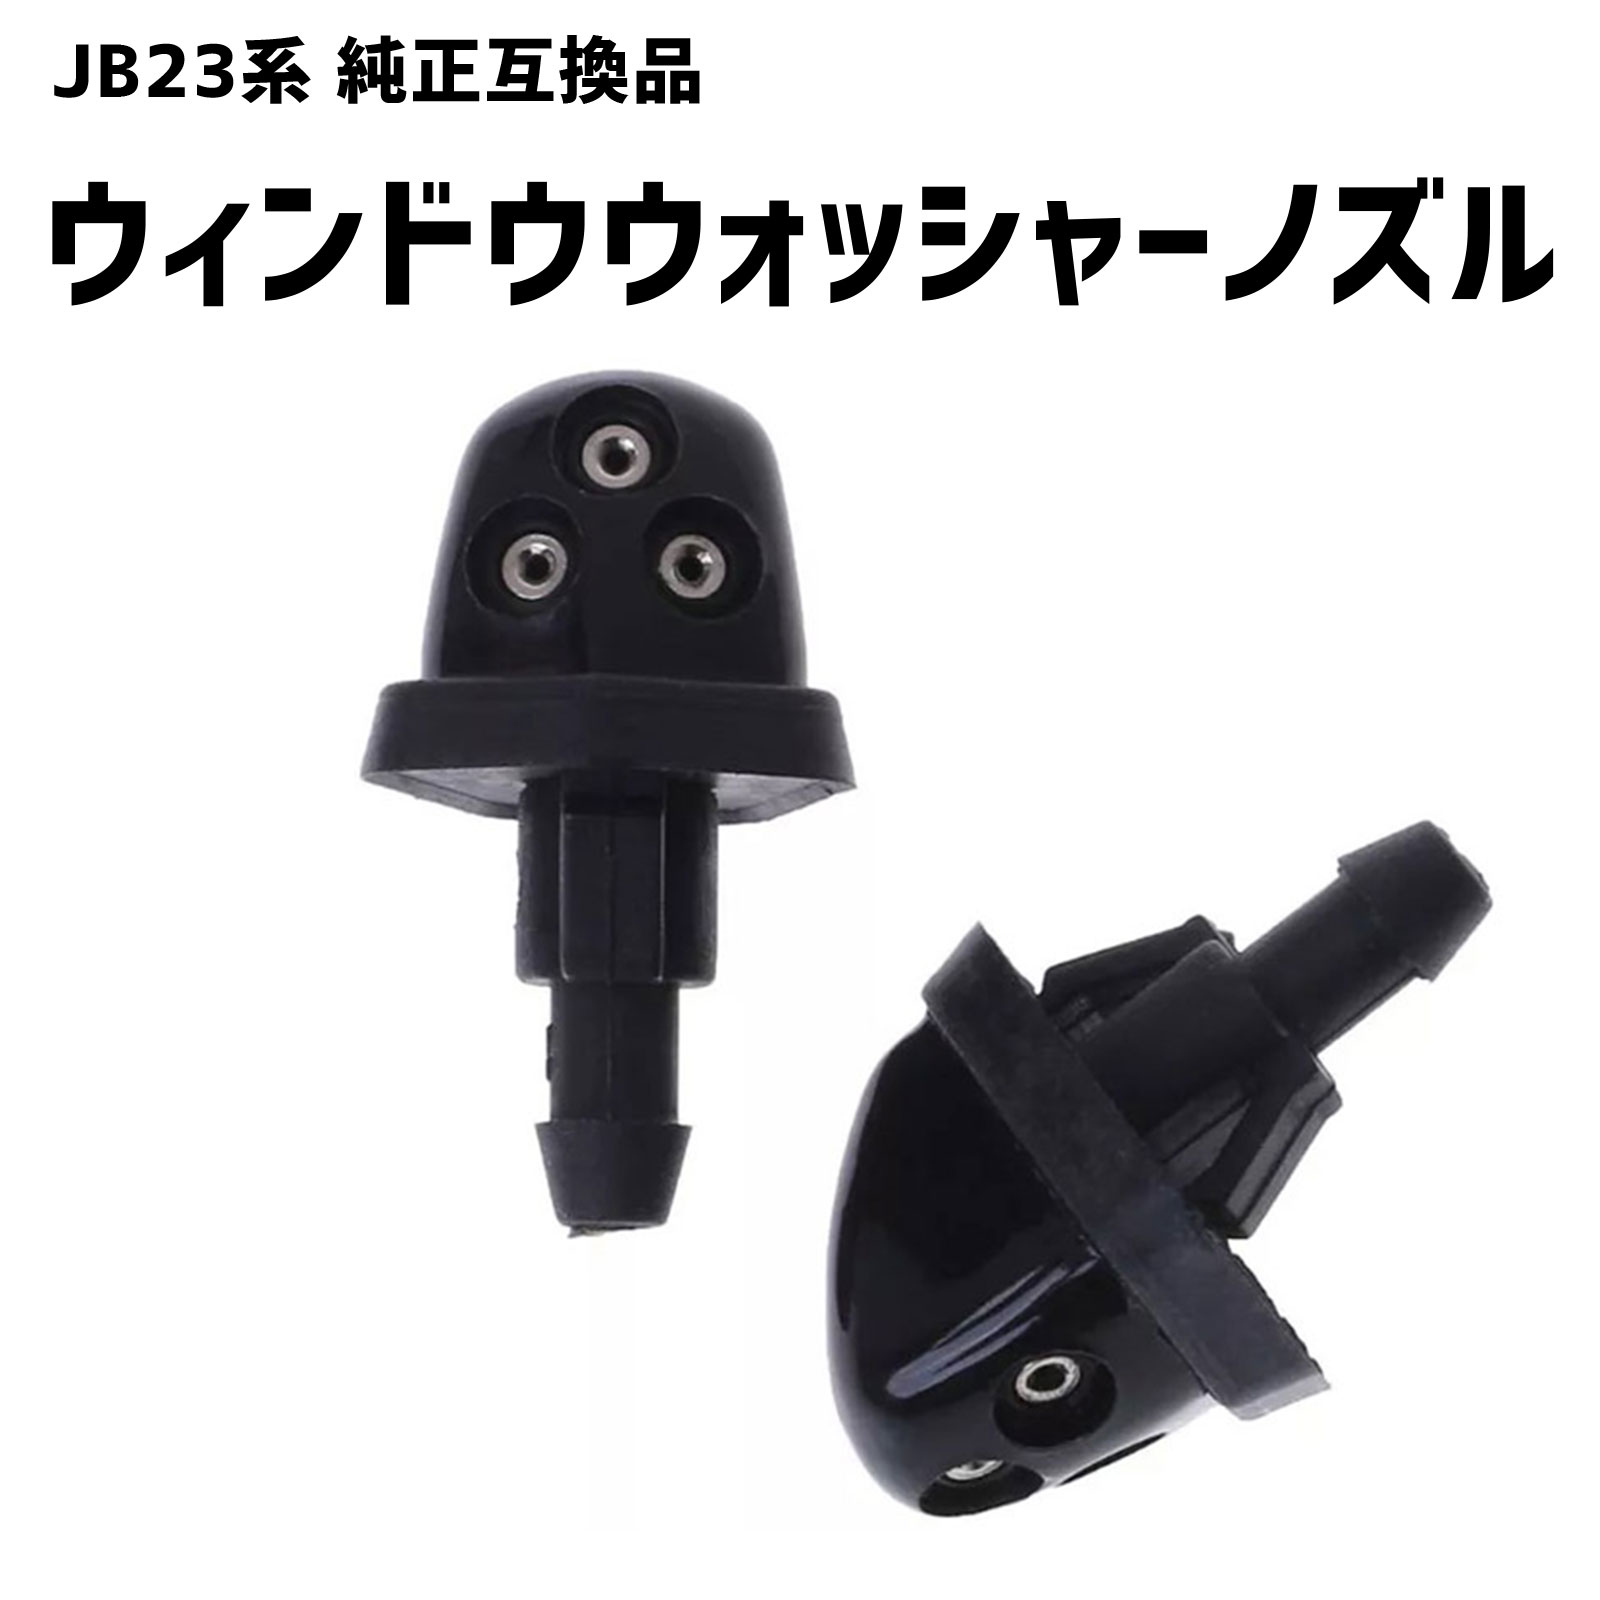 ウォッシャーノズル JB23 ジムニー 3穴 2個セット SUZUKI 互換品 SN-228-N1 通販